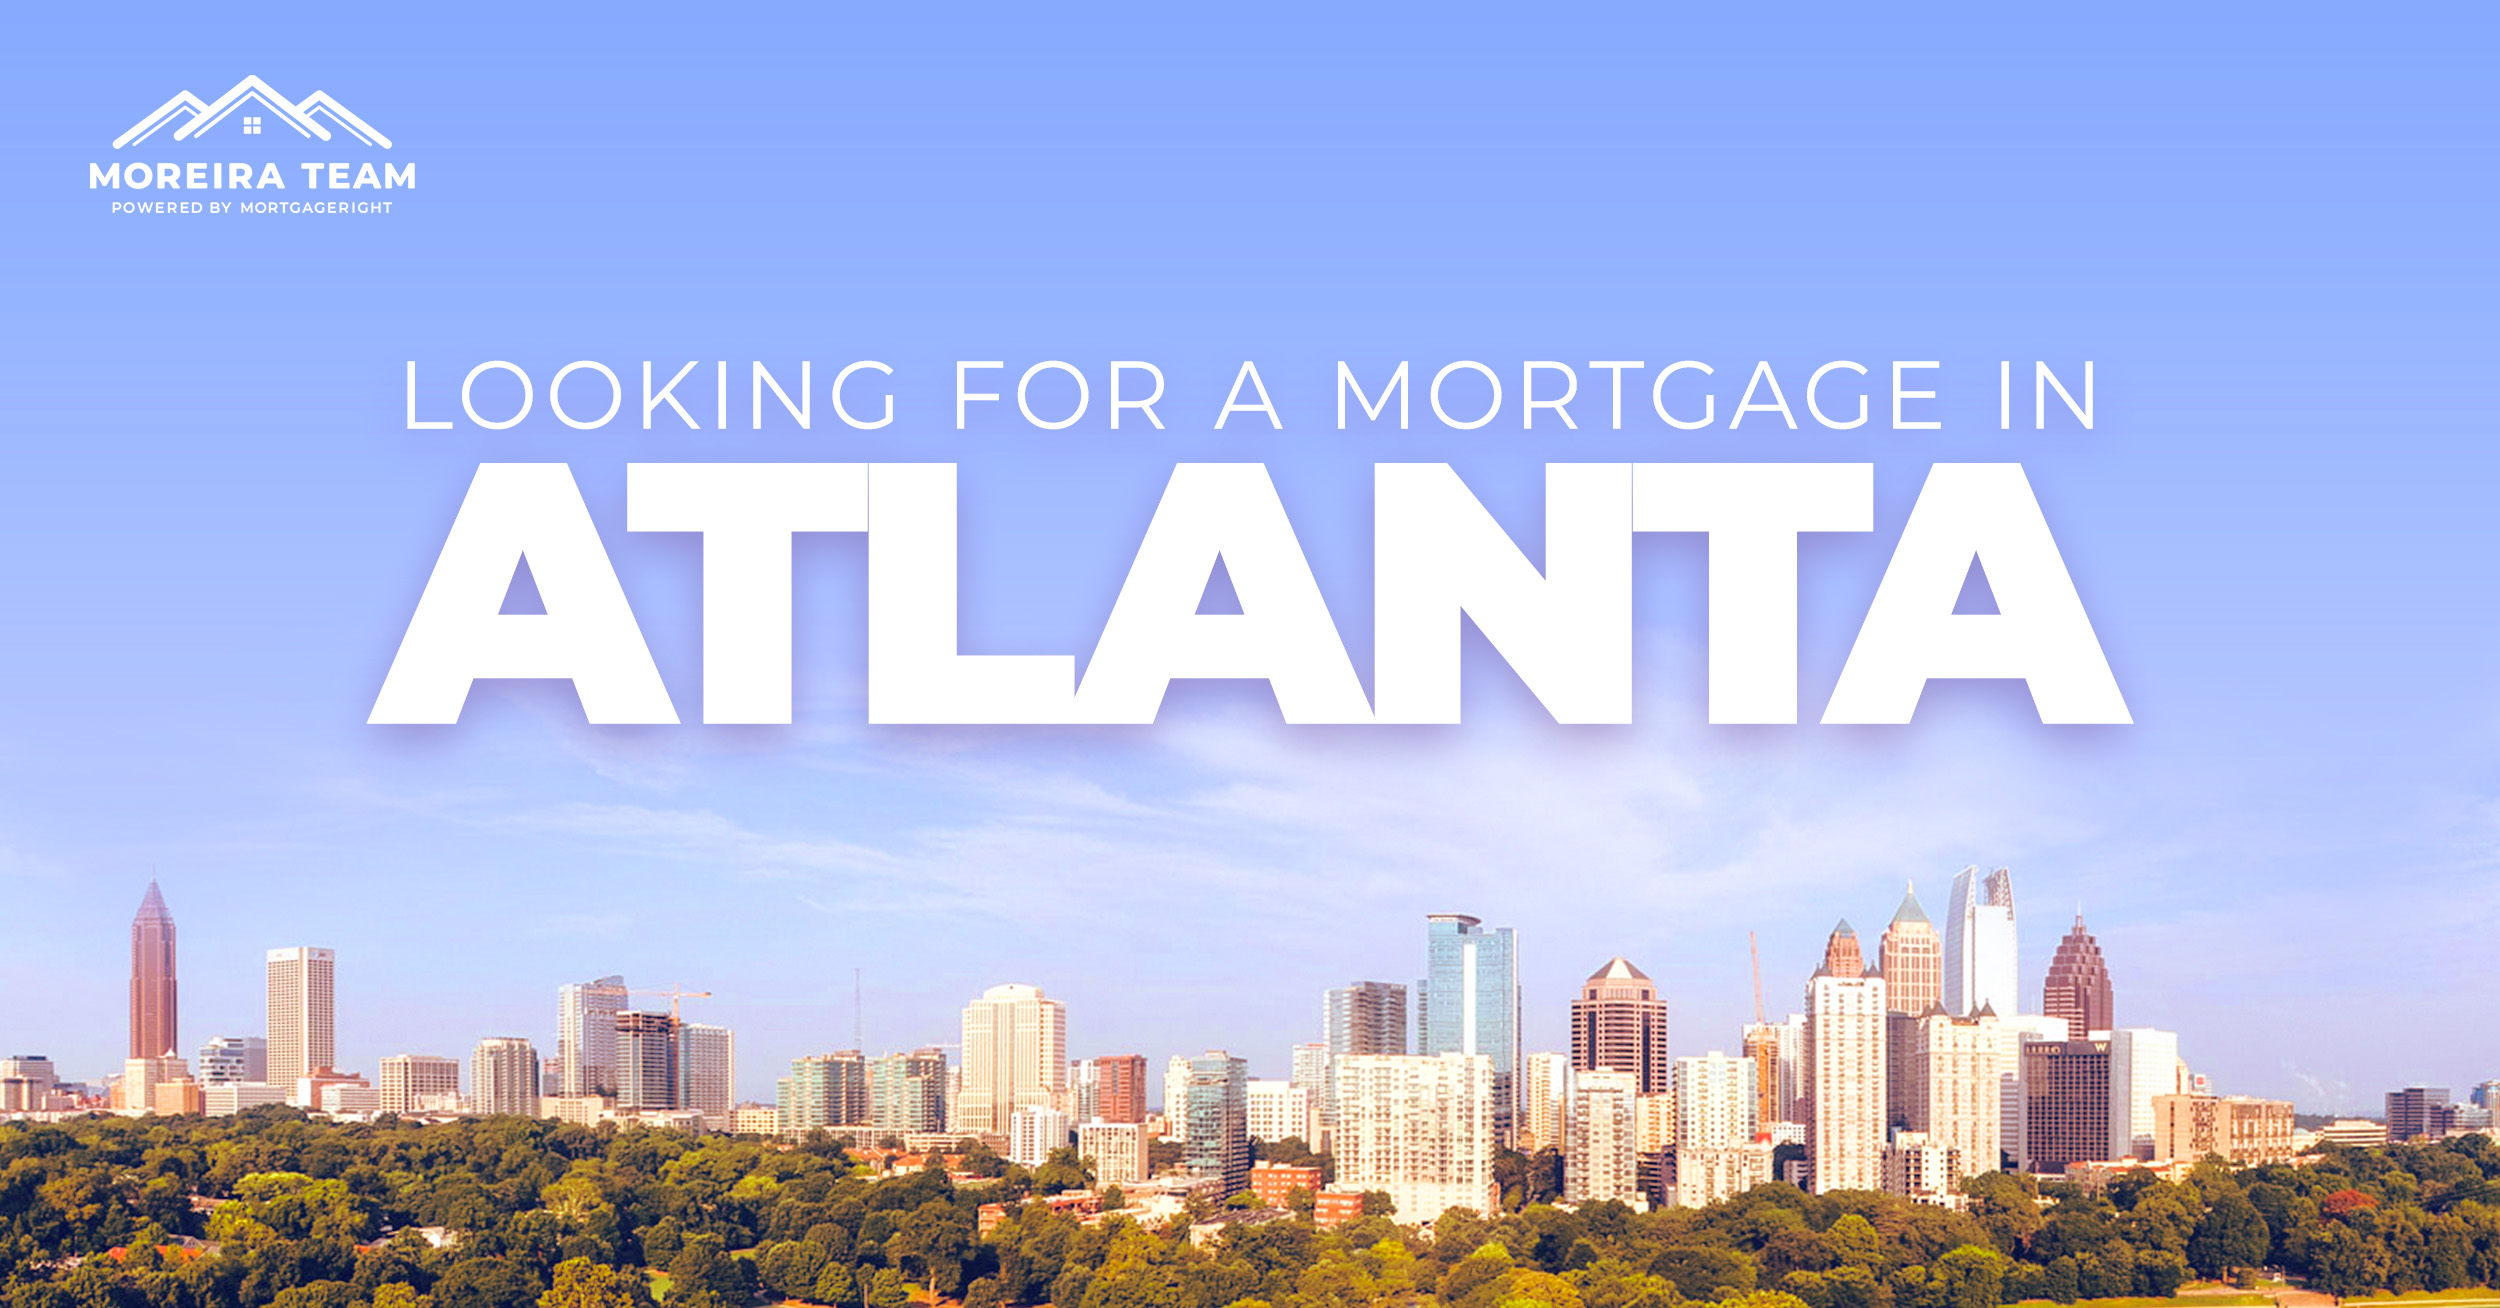 Atlanta home loans